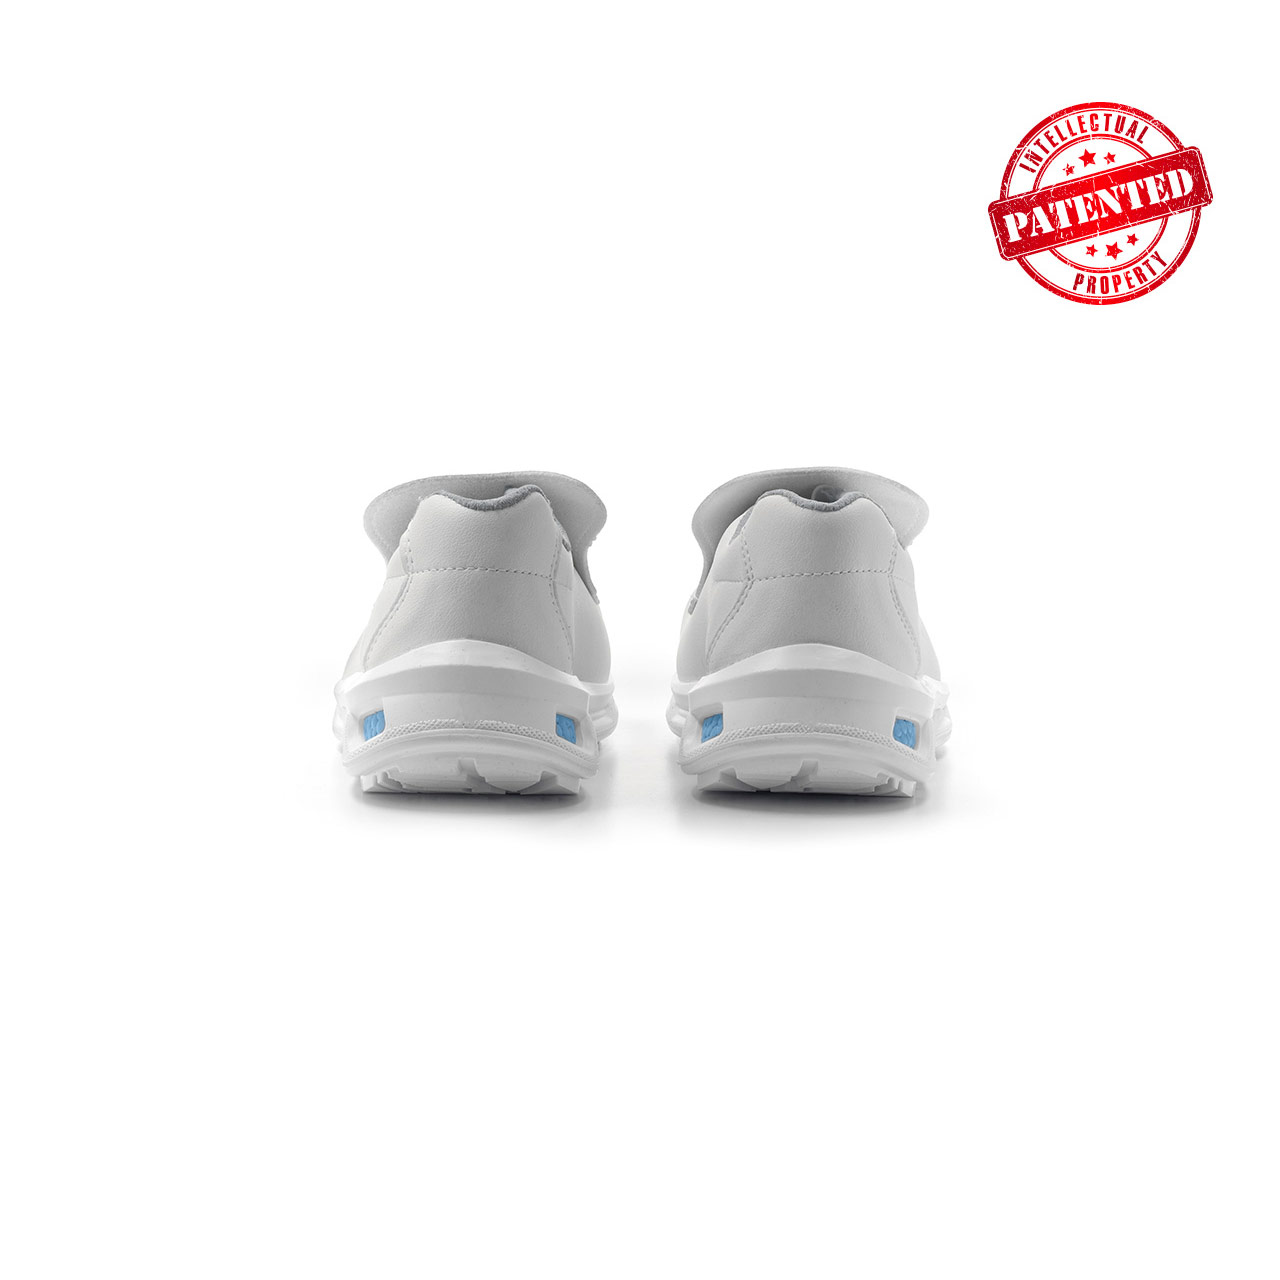 paio di scarpe antinfortunistiche upower modello blanco linea redlion vista retro